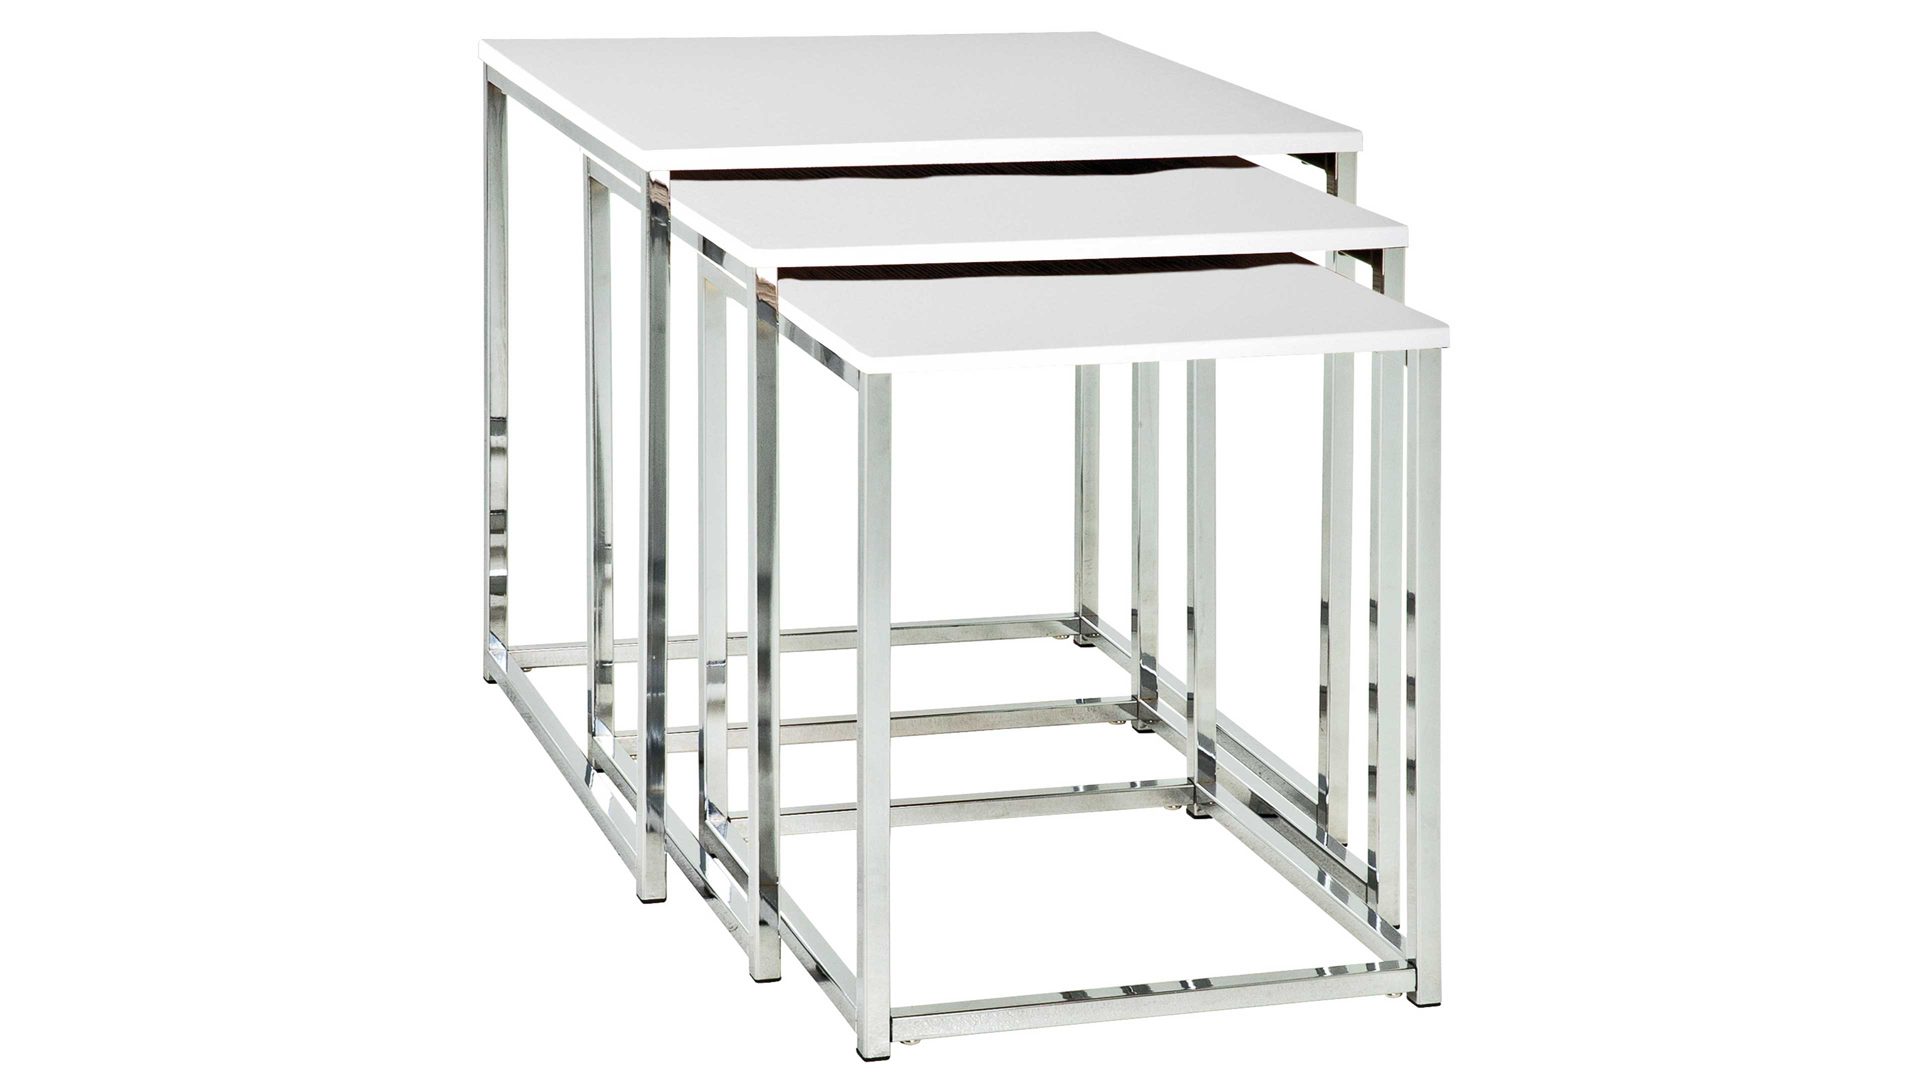 3-Satz-Tisch Haku aus Metall in Weiß Satztisch mit 3 Teilen für nahezu jede Sofalandschaft Weiß & Chrom - dreiteilig